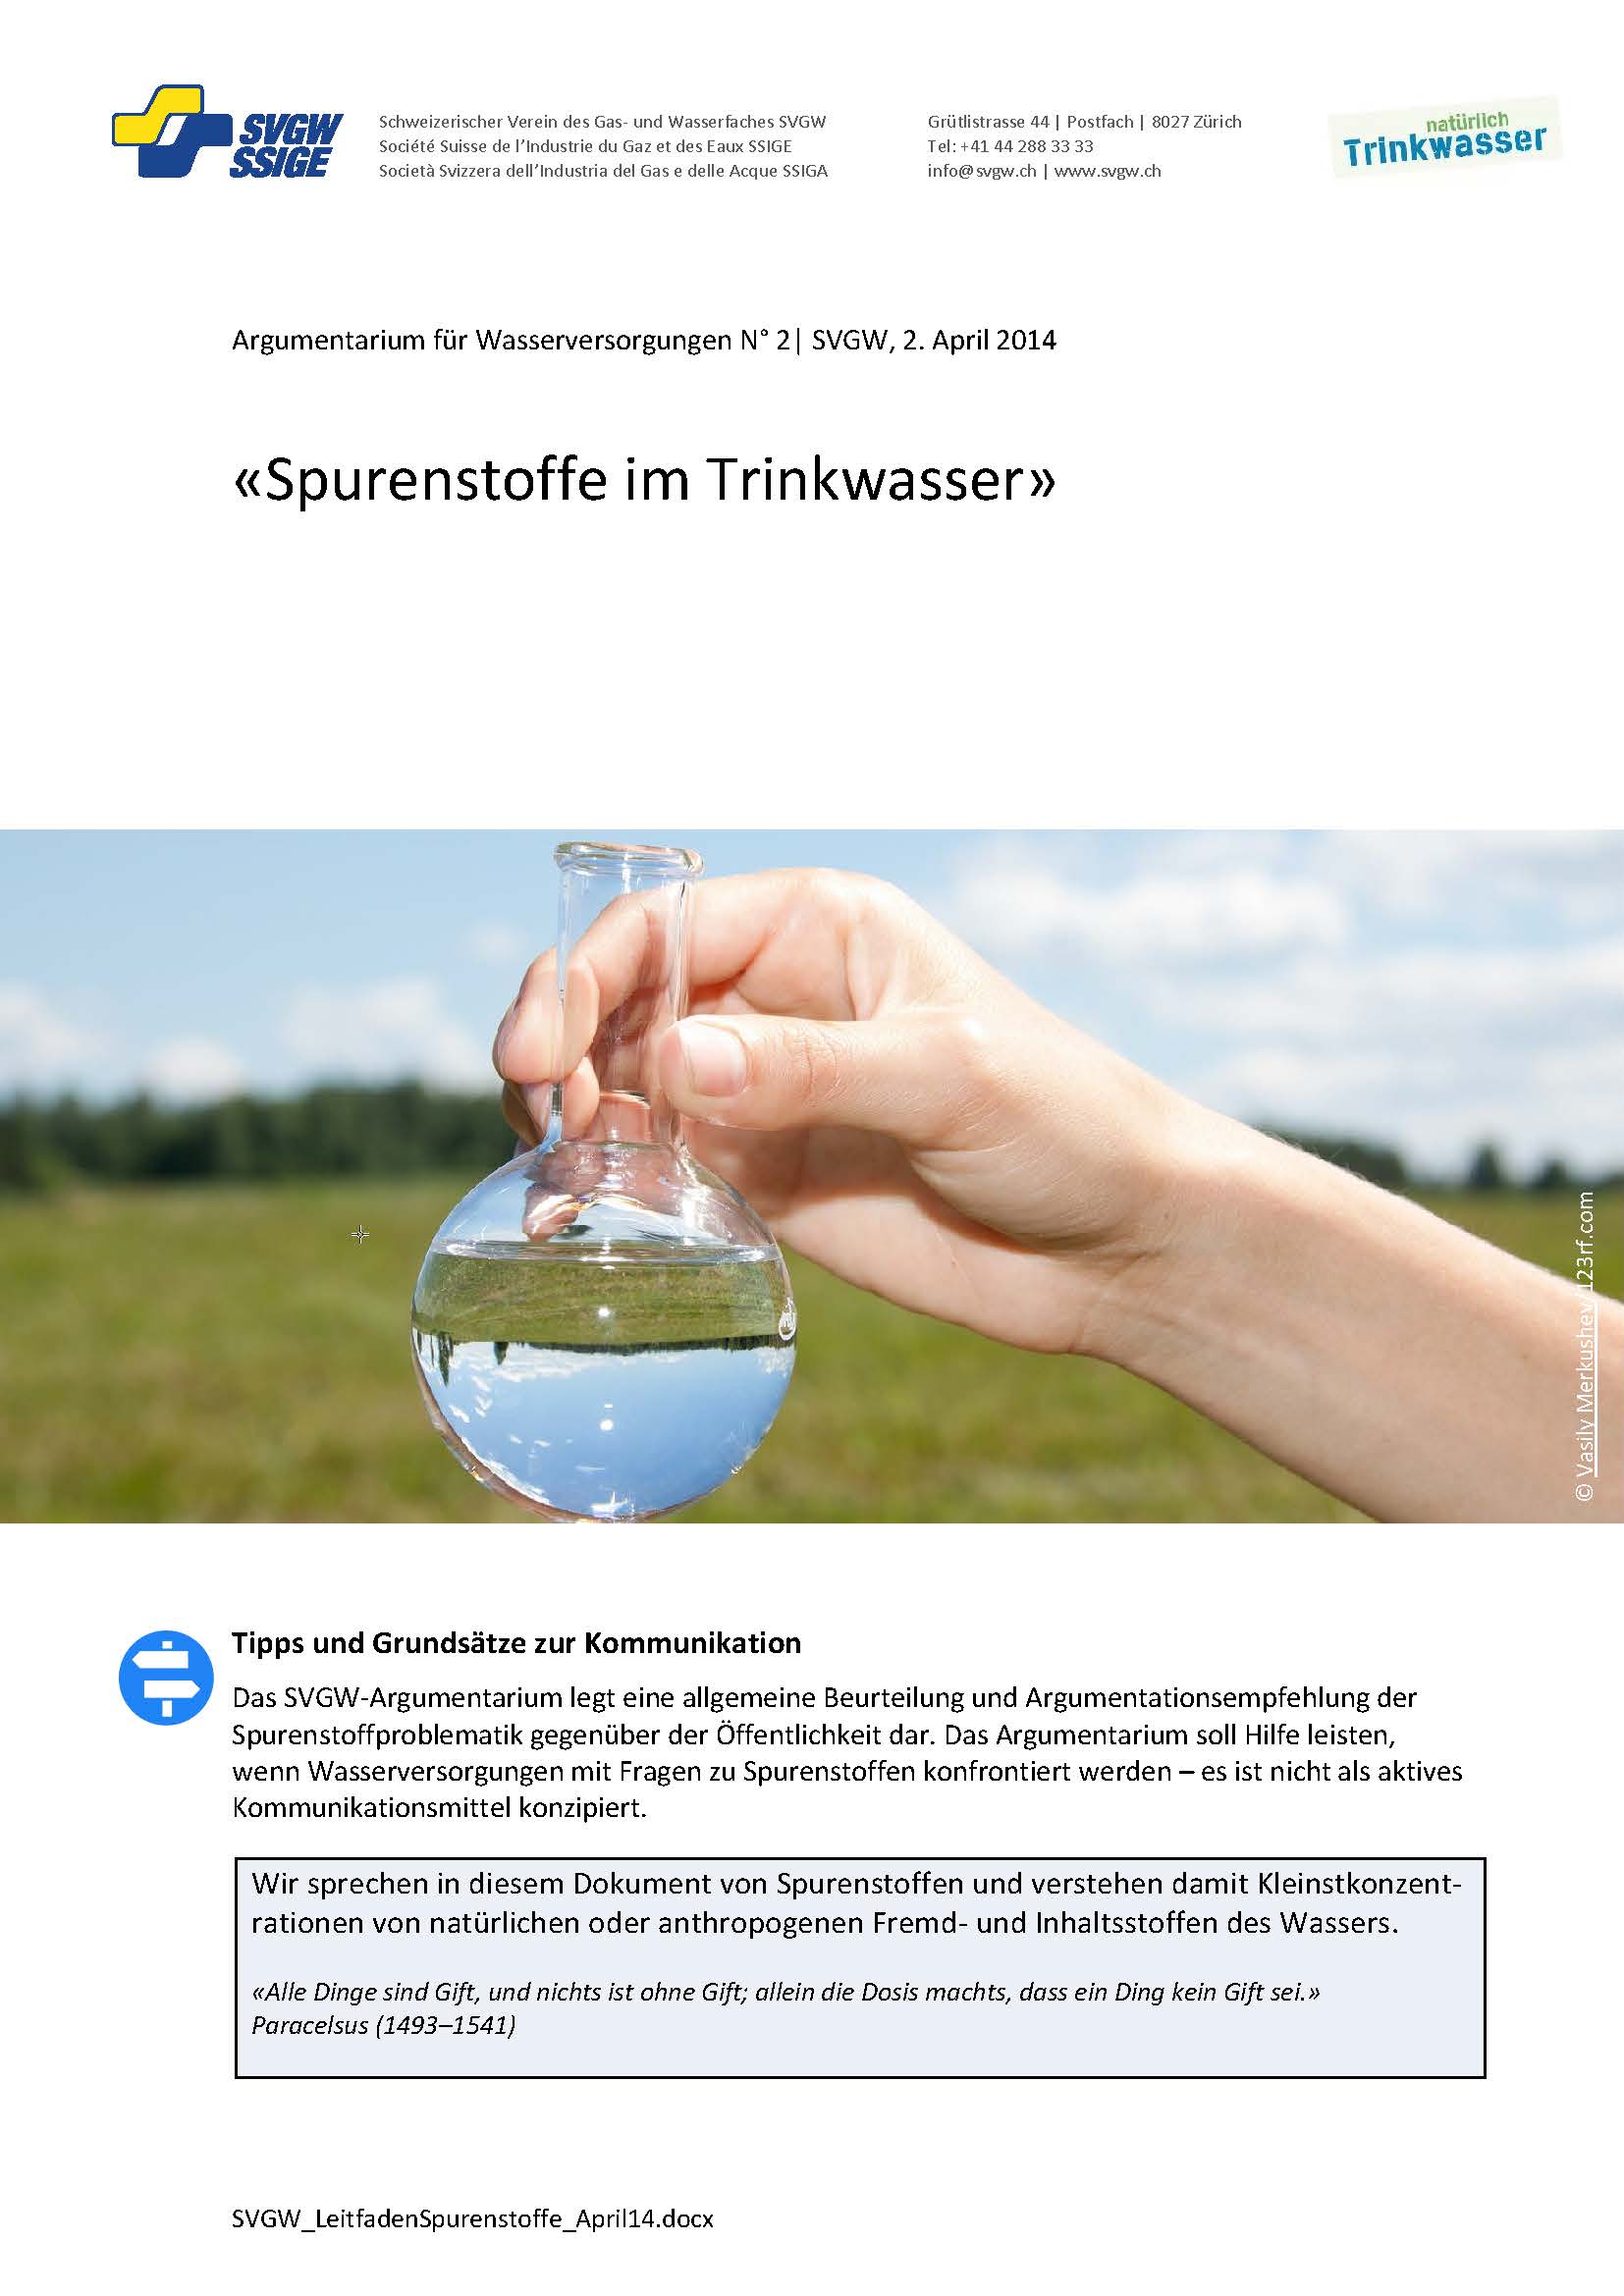 Argumentarium: «Spurenstoffe im Trinkwasser»